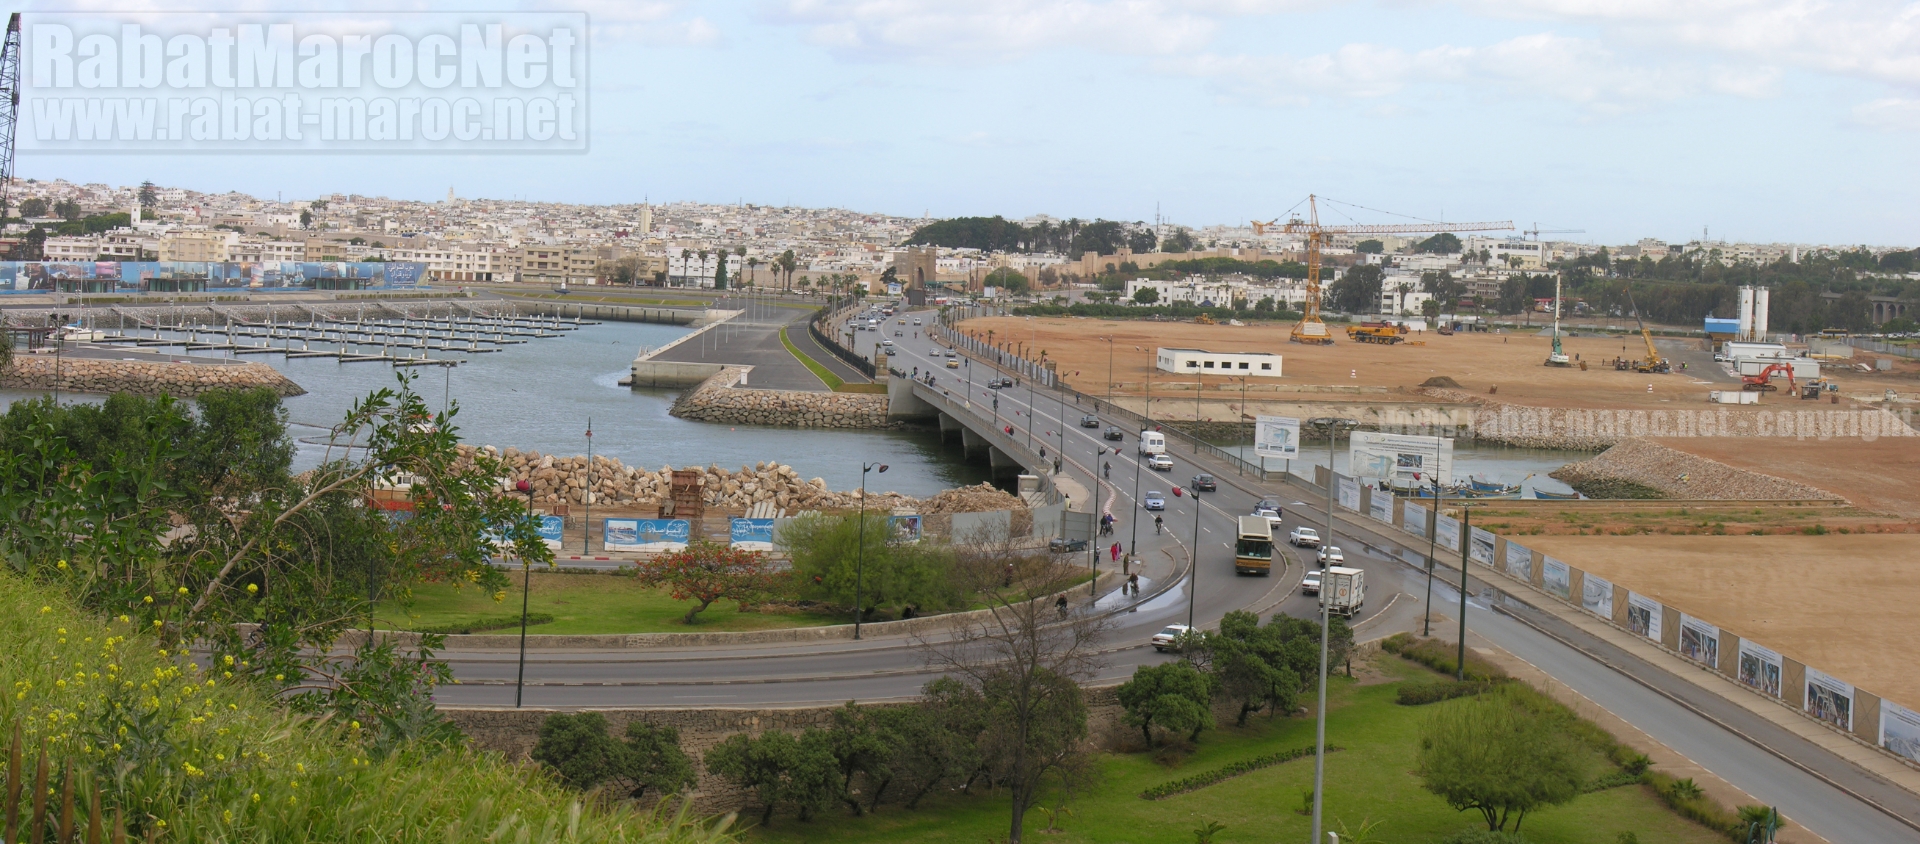 2008 - la marina en construction  - pont moulay hassan